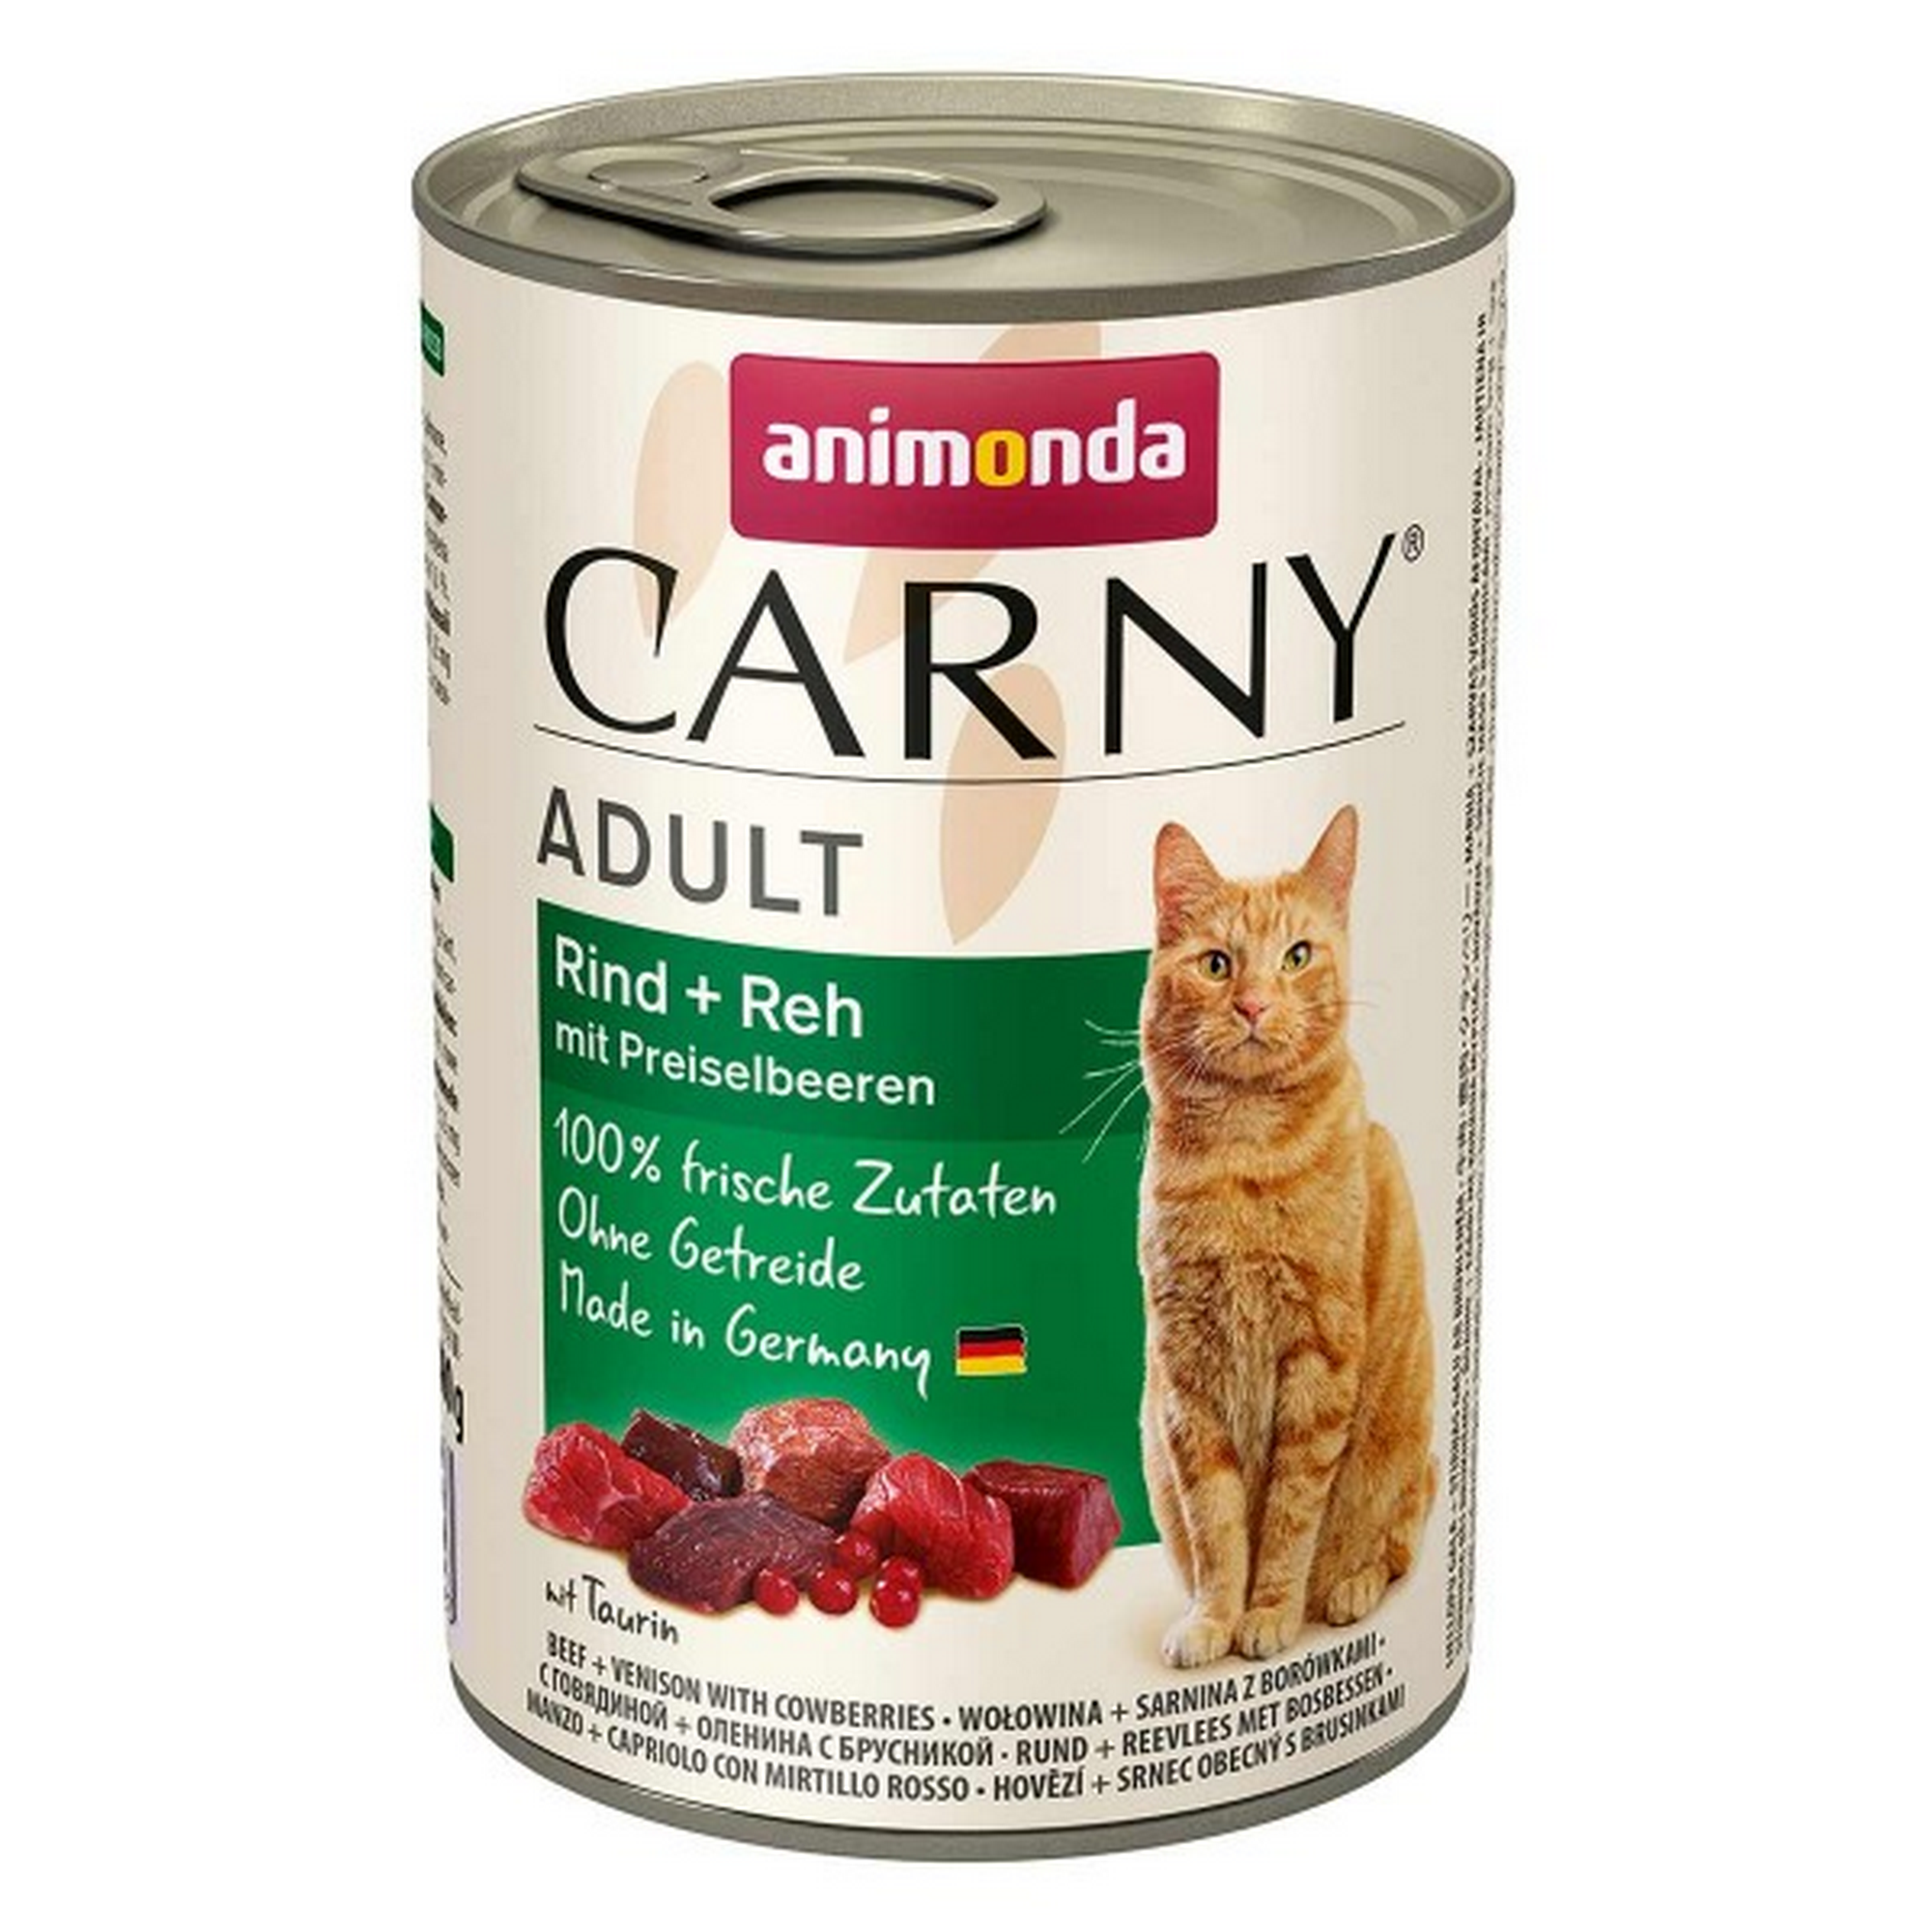 Katzennassfutter 'Carny' Adult Rind und Reh mit Preiselbeeren 400 g + product picture